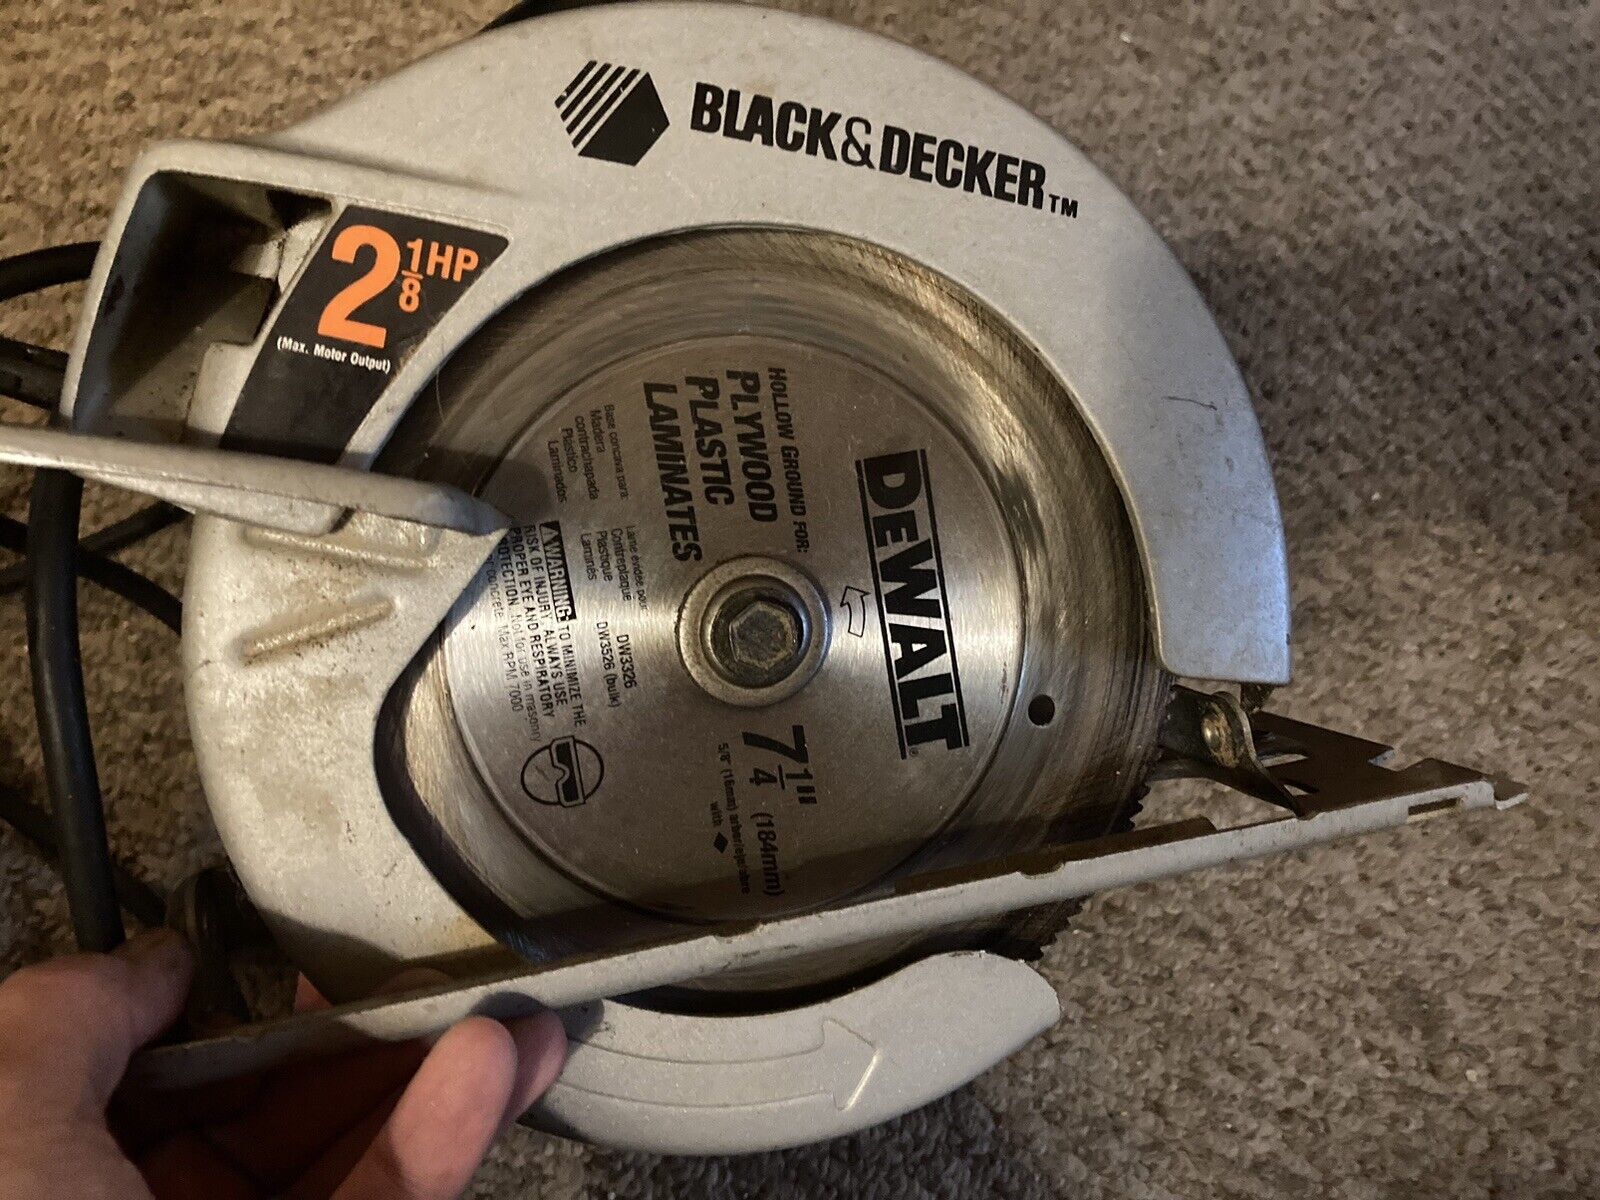 Black & Decker 7 1/4” Circular Saw, 2 1/8 HP - $37.99